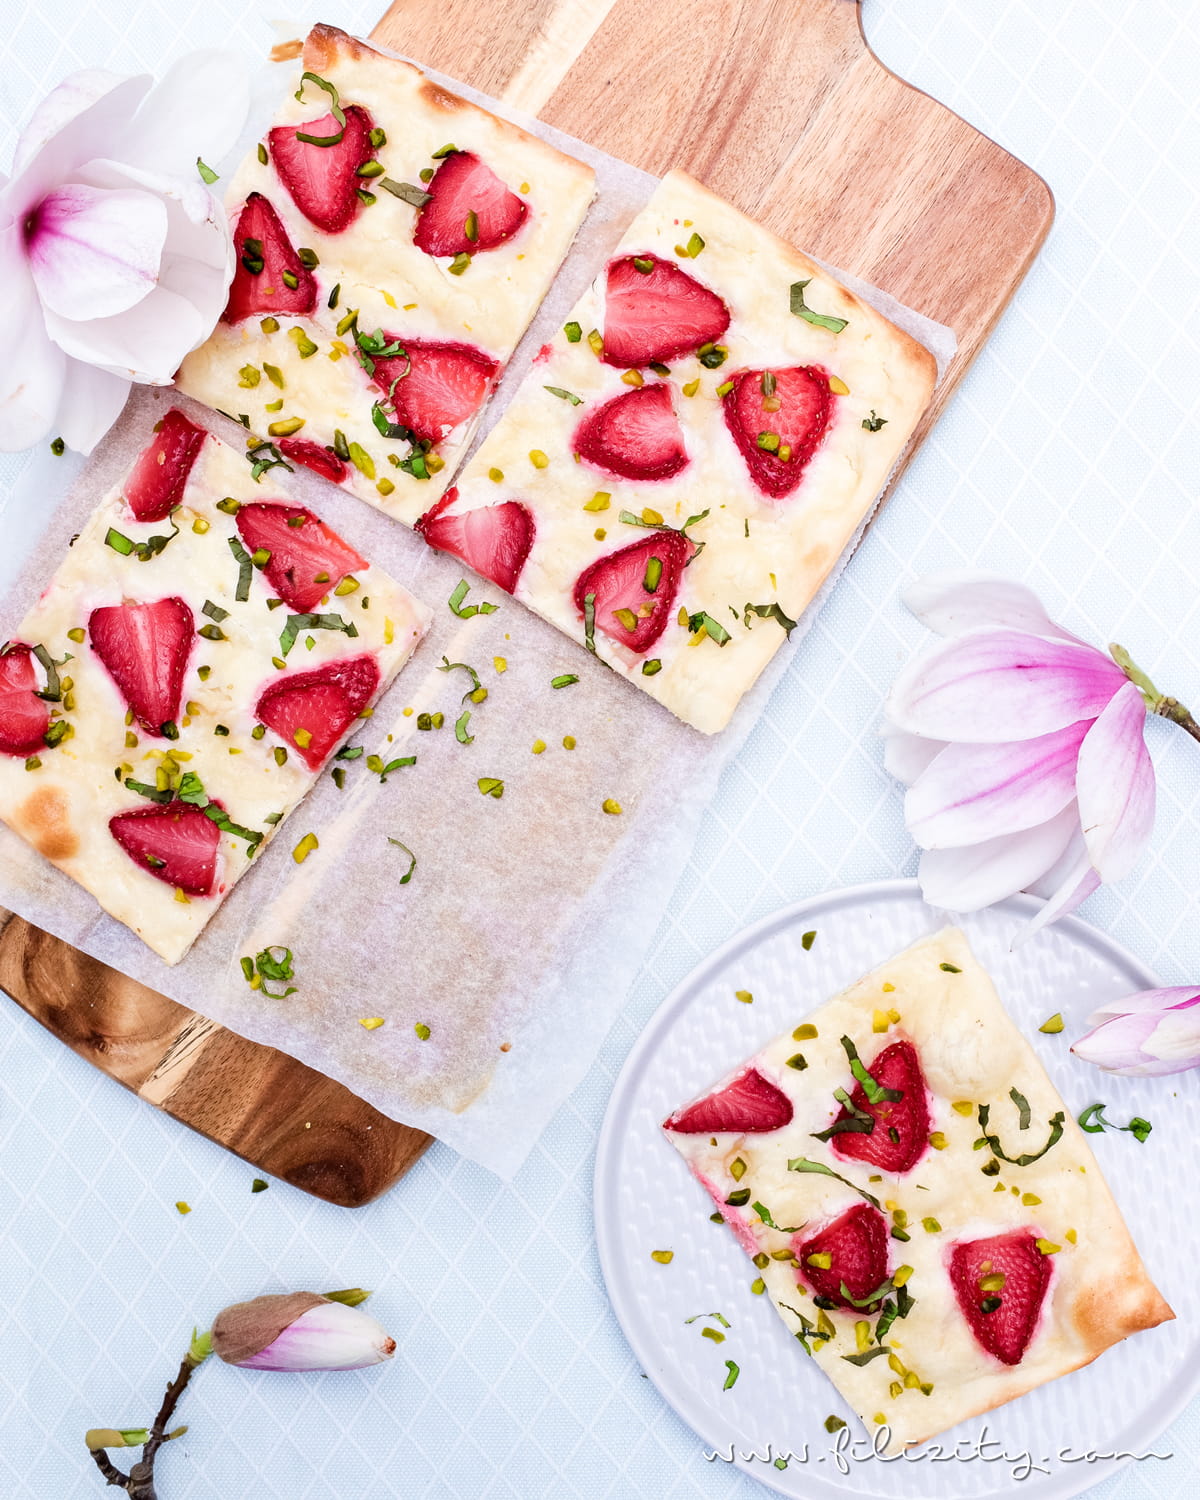 Rezept für Erdbeer-Flammkuchen | Eine süße, sommerliche Variante des Klassikers "Elsasser Flammkuchen" | Filizity.com | Food-Blog aus dem Rheinland #flammkuchen #erdbeeren #sommer